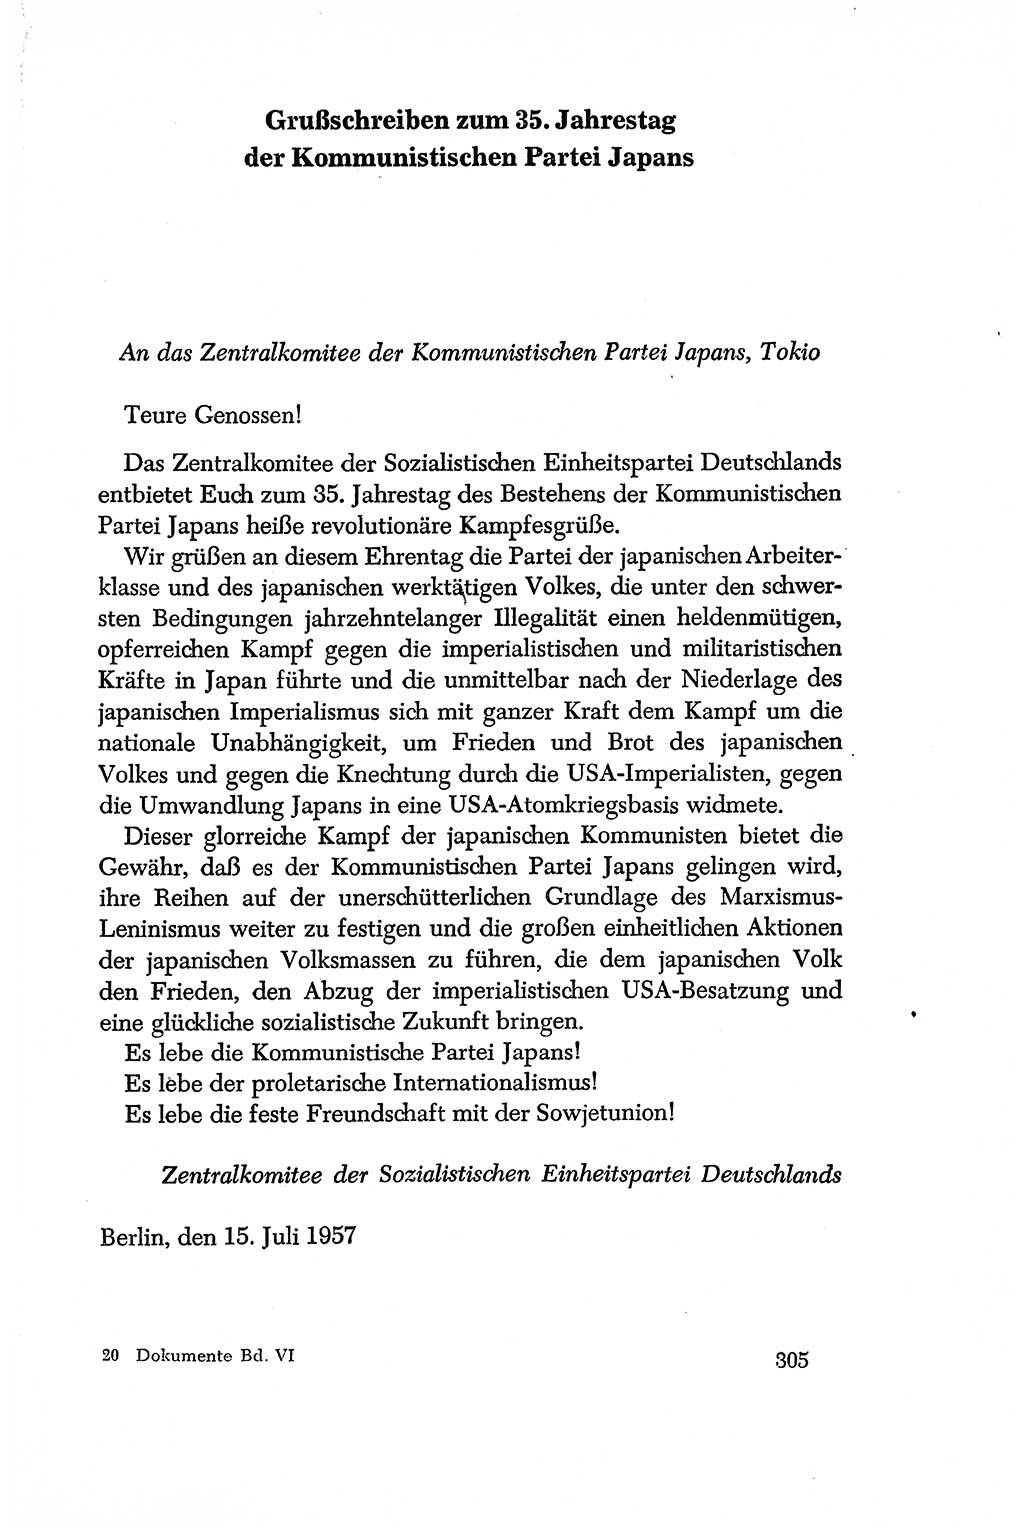 Dokumente der Sozialistischen Einheitspartei Deutschlands (SED) [Deutsche Demokratische Republik (DDR)] 1956-1957, Seite 305 (Dok. SED DDR 1956-1957, S. 305)